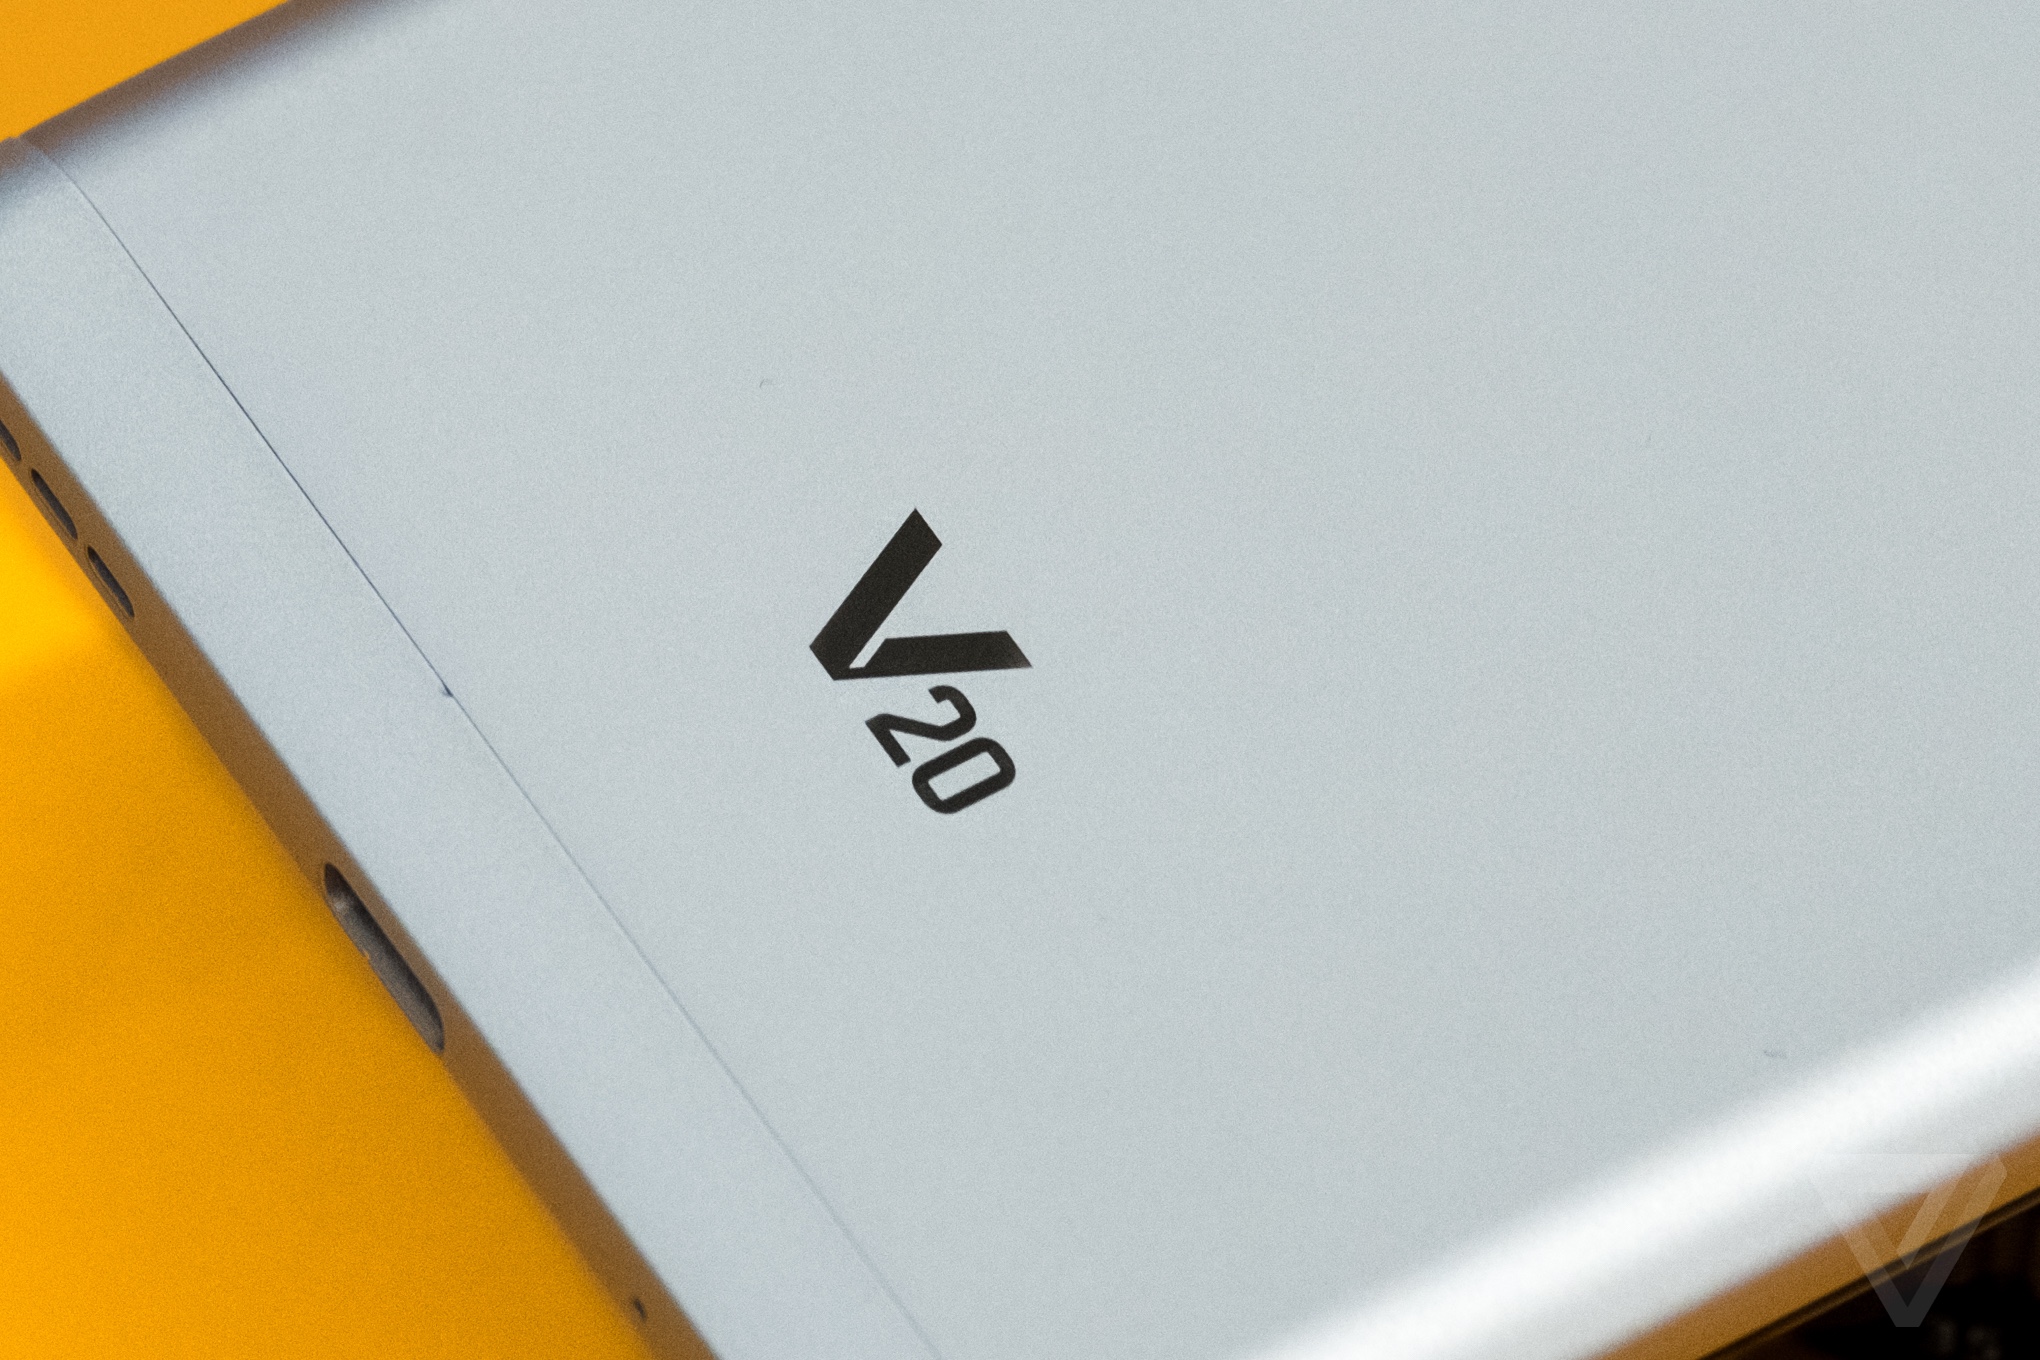 LG V20 review